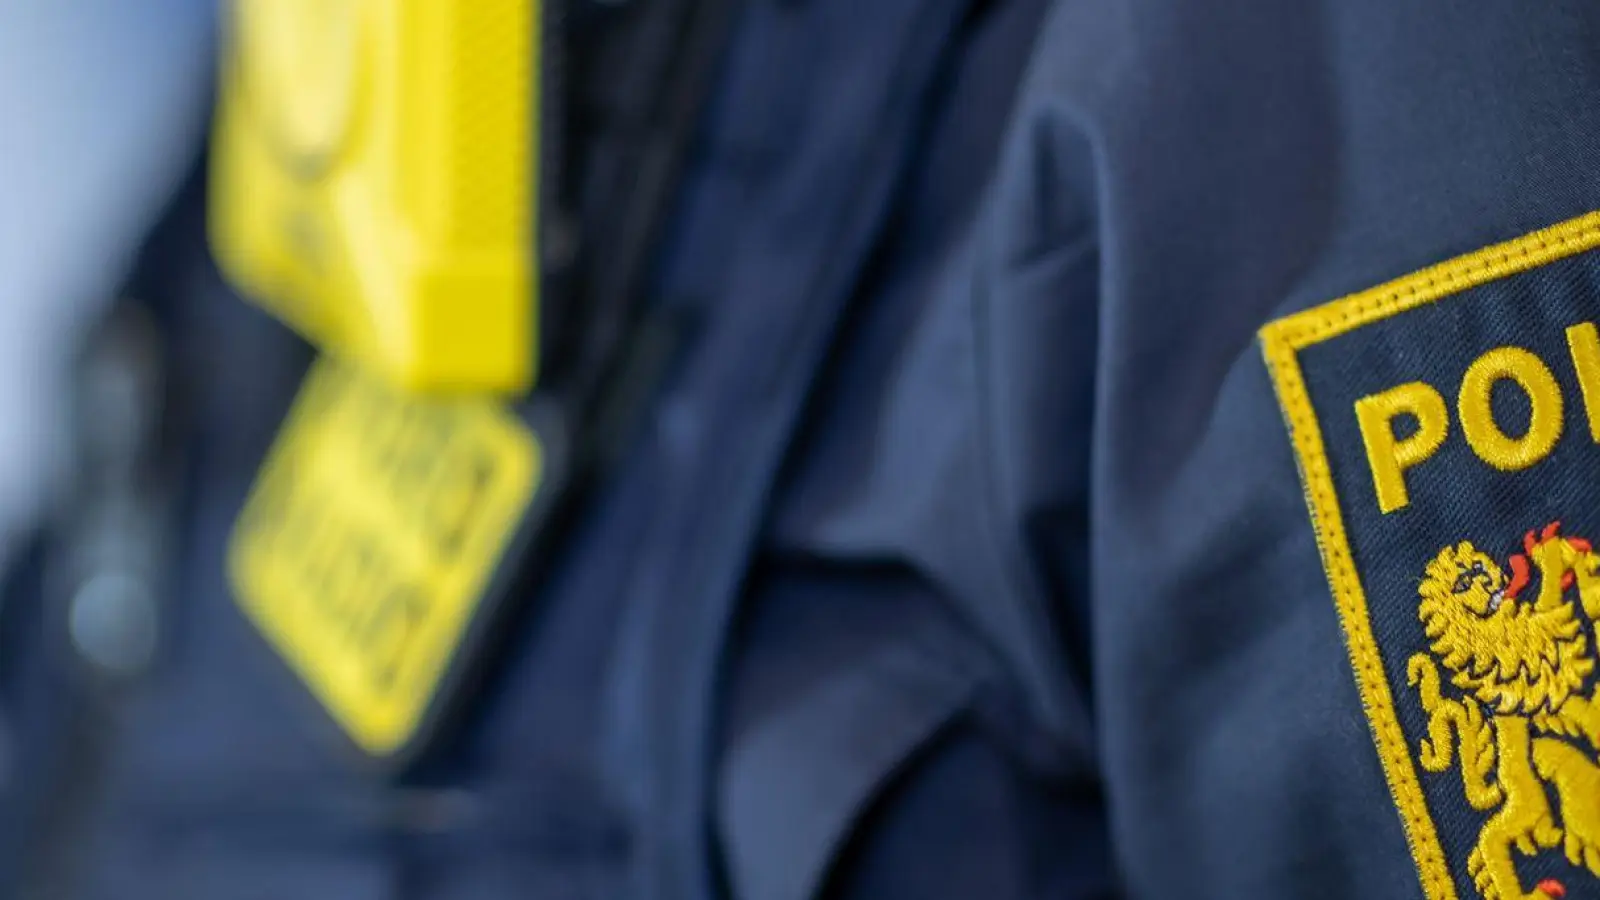 Eine Polizistin trägt ein Abzeichen der bayerischen Polizei. (Foto: Daniel Karmann/dpa/Symbolbild)